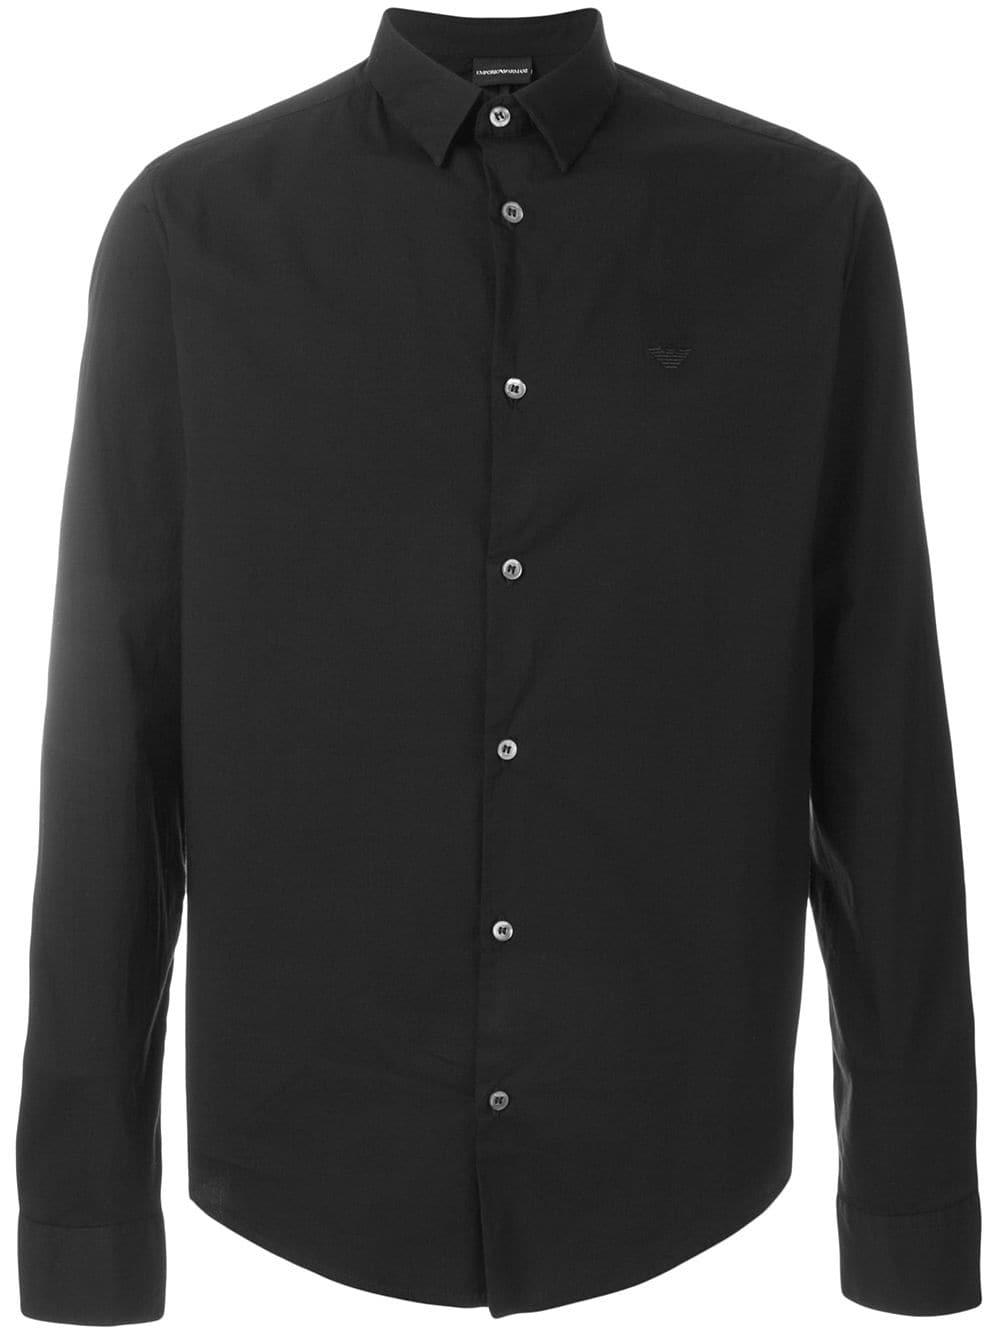 Emporio Armani Cotton Classic Button-down Shirt in Black for Men - Lyst